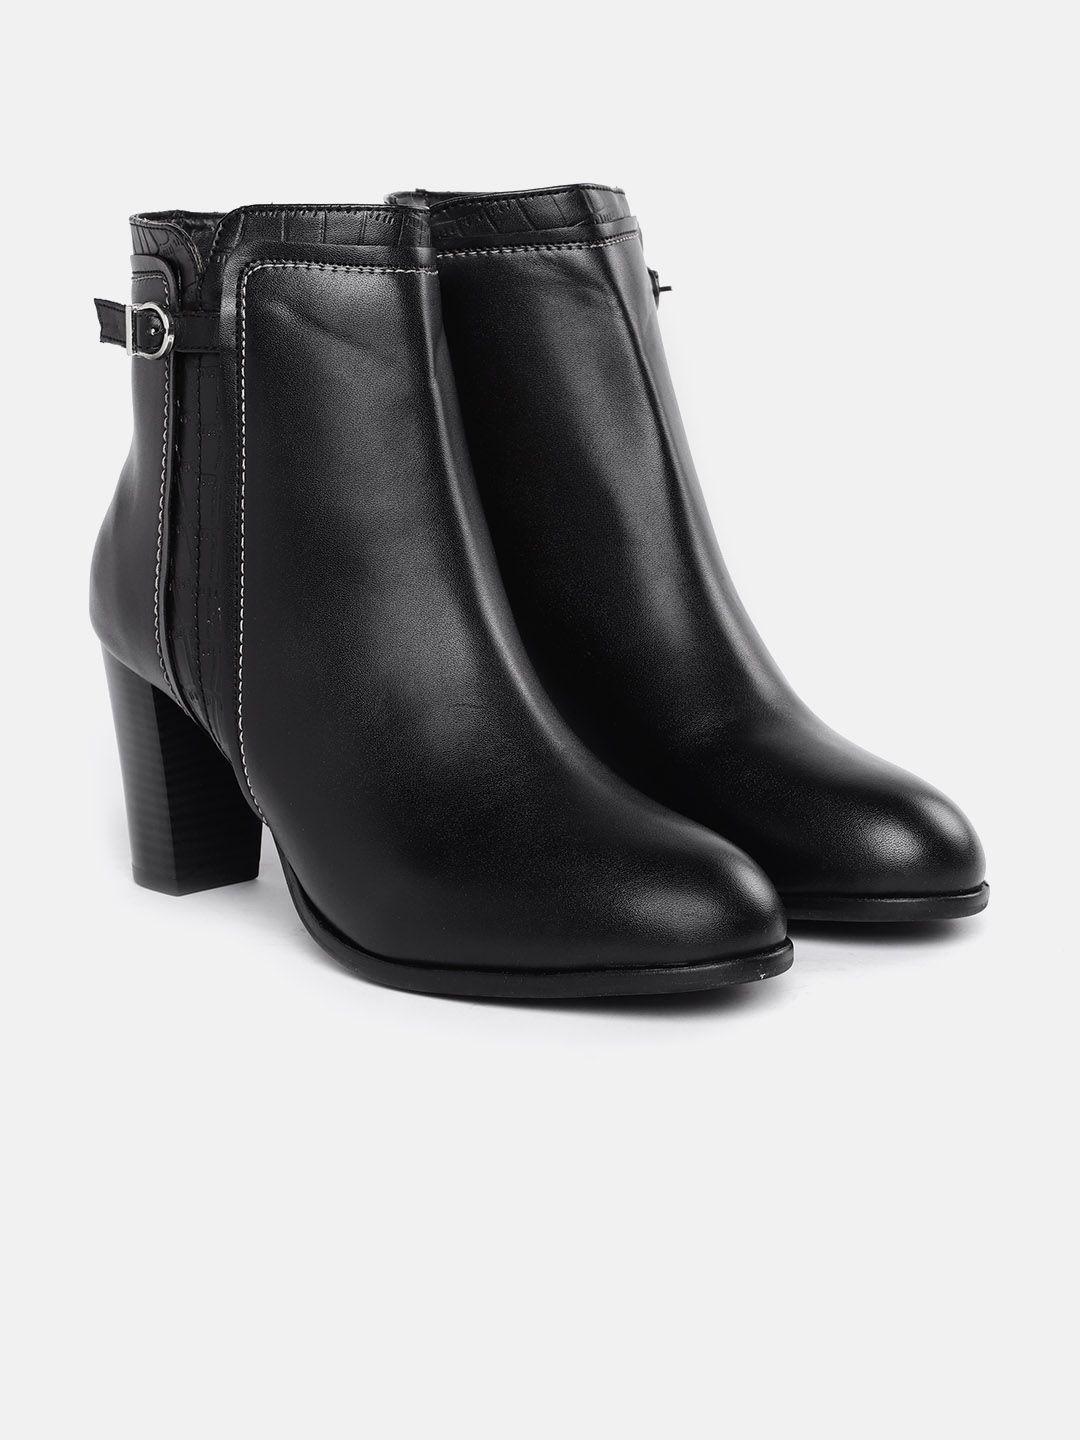 corsica-women-black-solid-with-croc-textured-detail-mid-top-block-heel-regular-boots